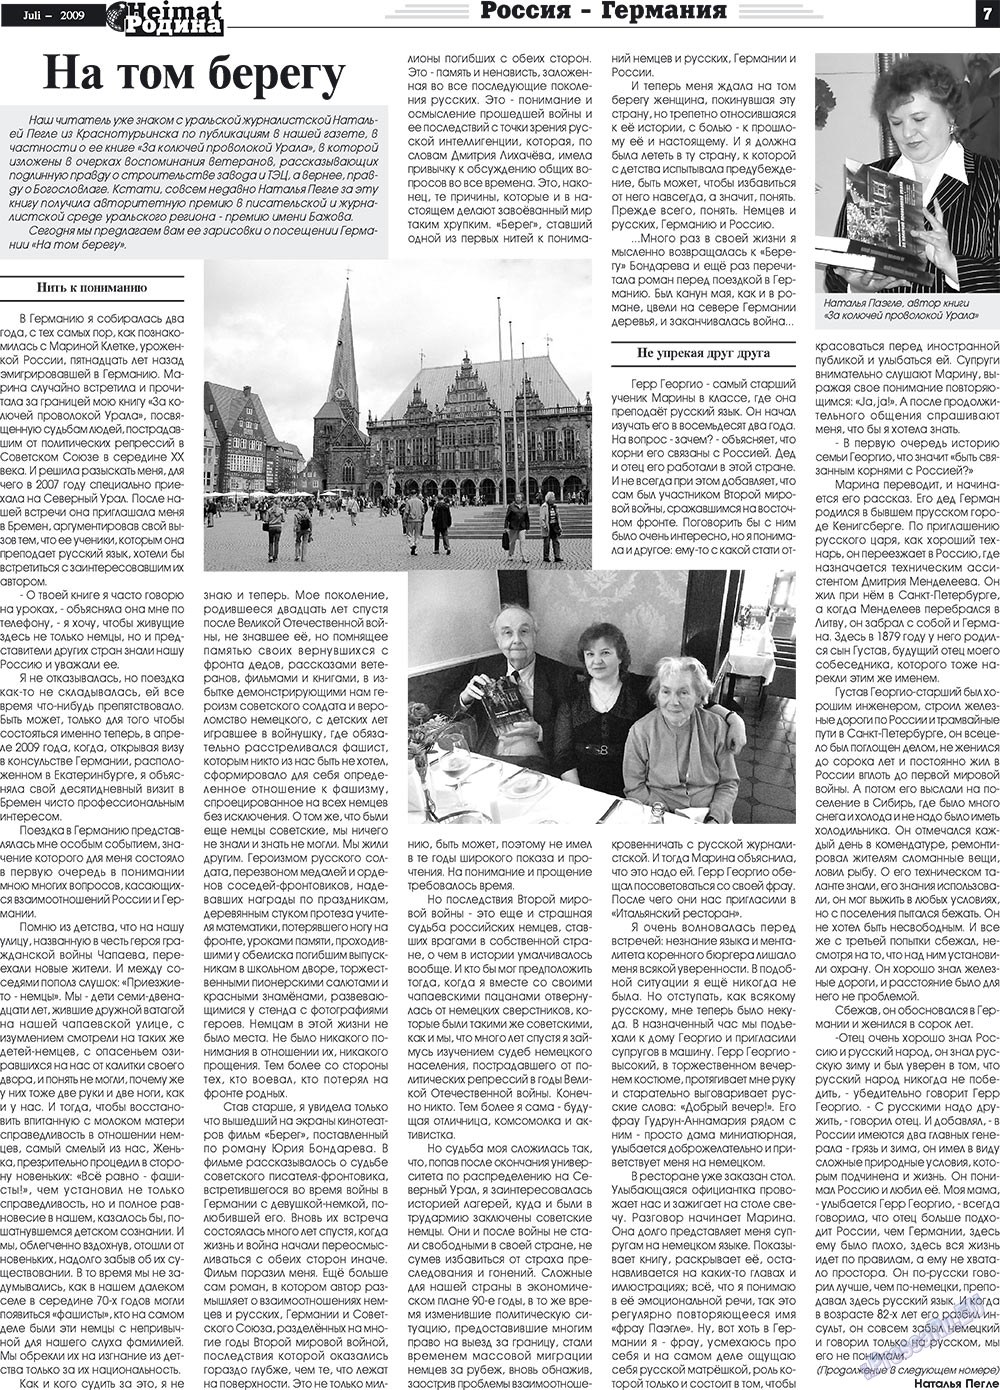 Heimat-Родина (газета). 2009 год, номер 7, стр. 7